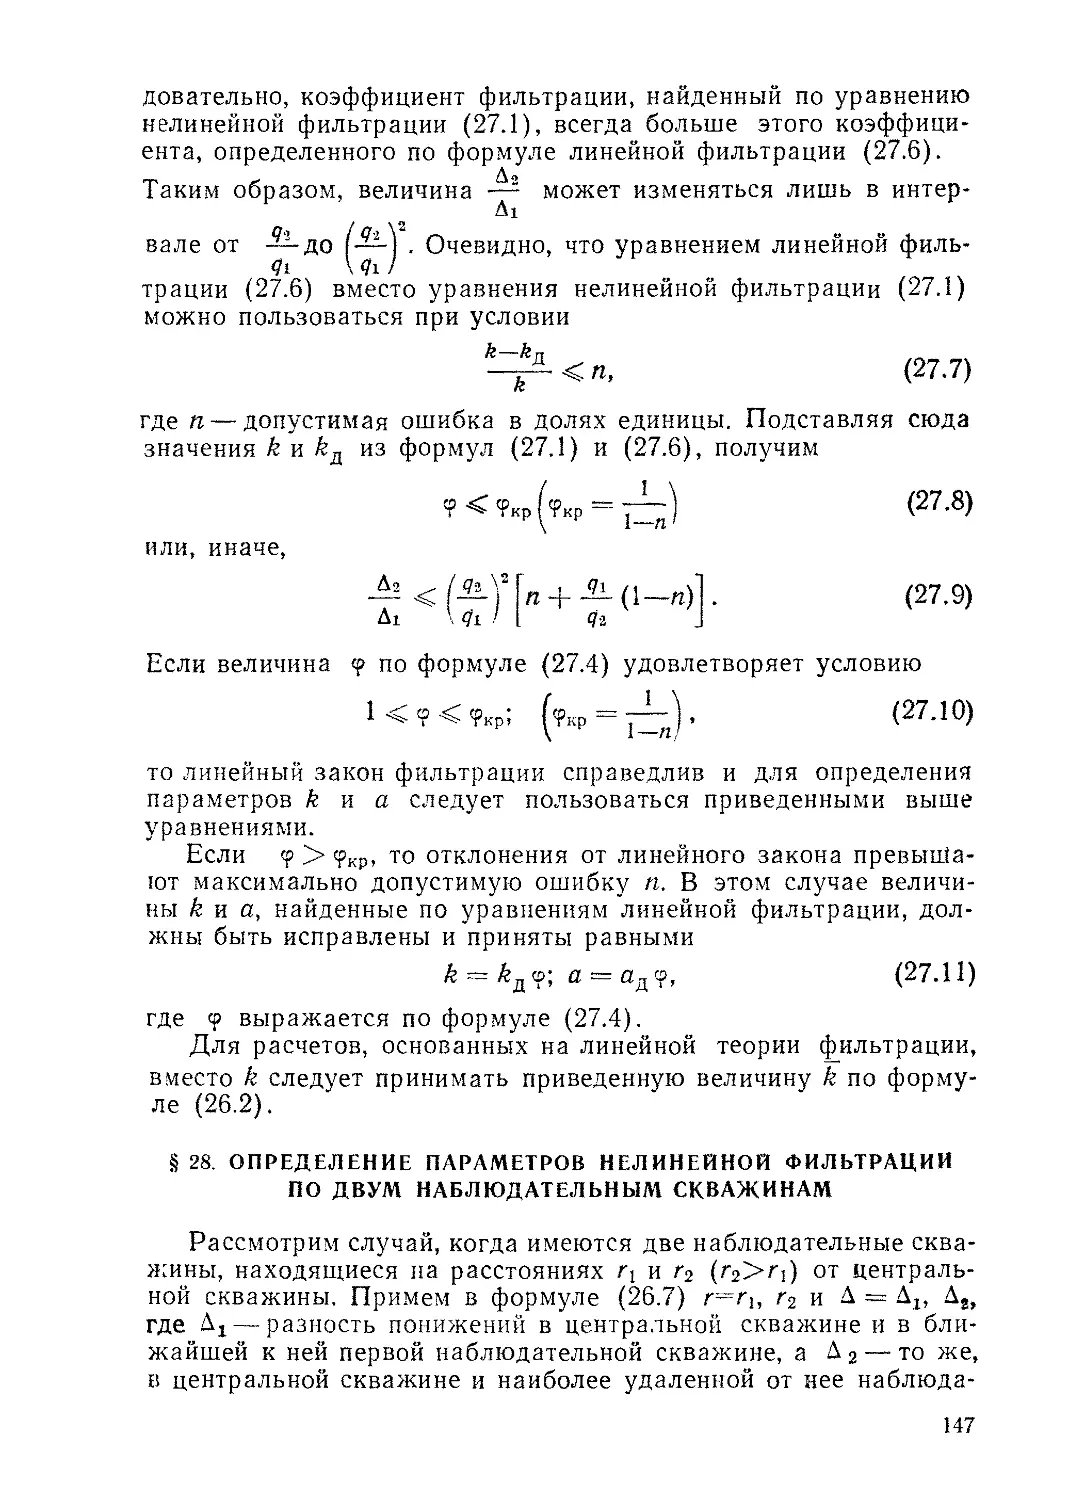 § 28. Определение параметров нелинейной фильтрации по двум наблюдательным скважинам, 147